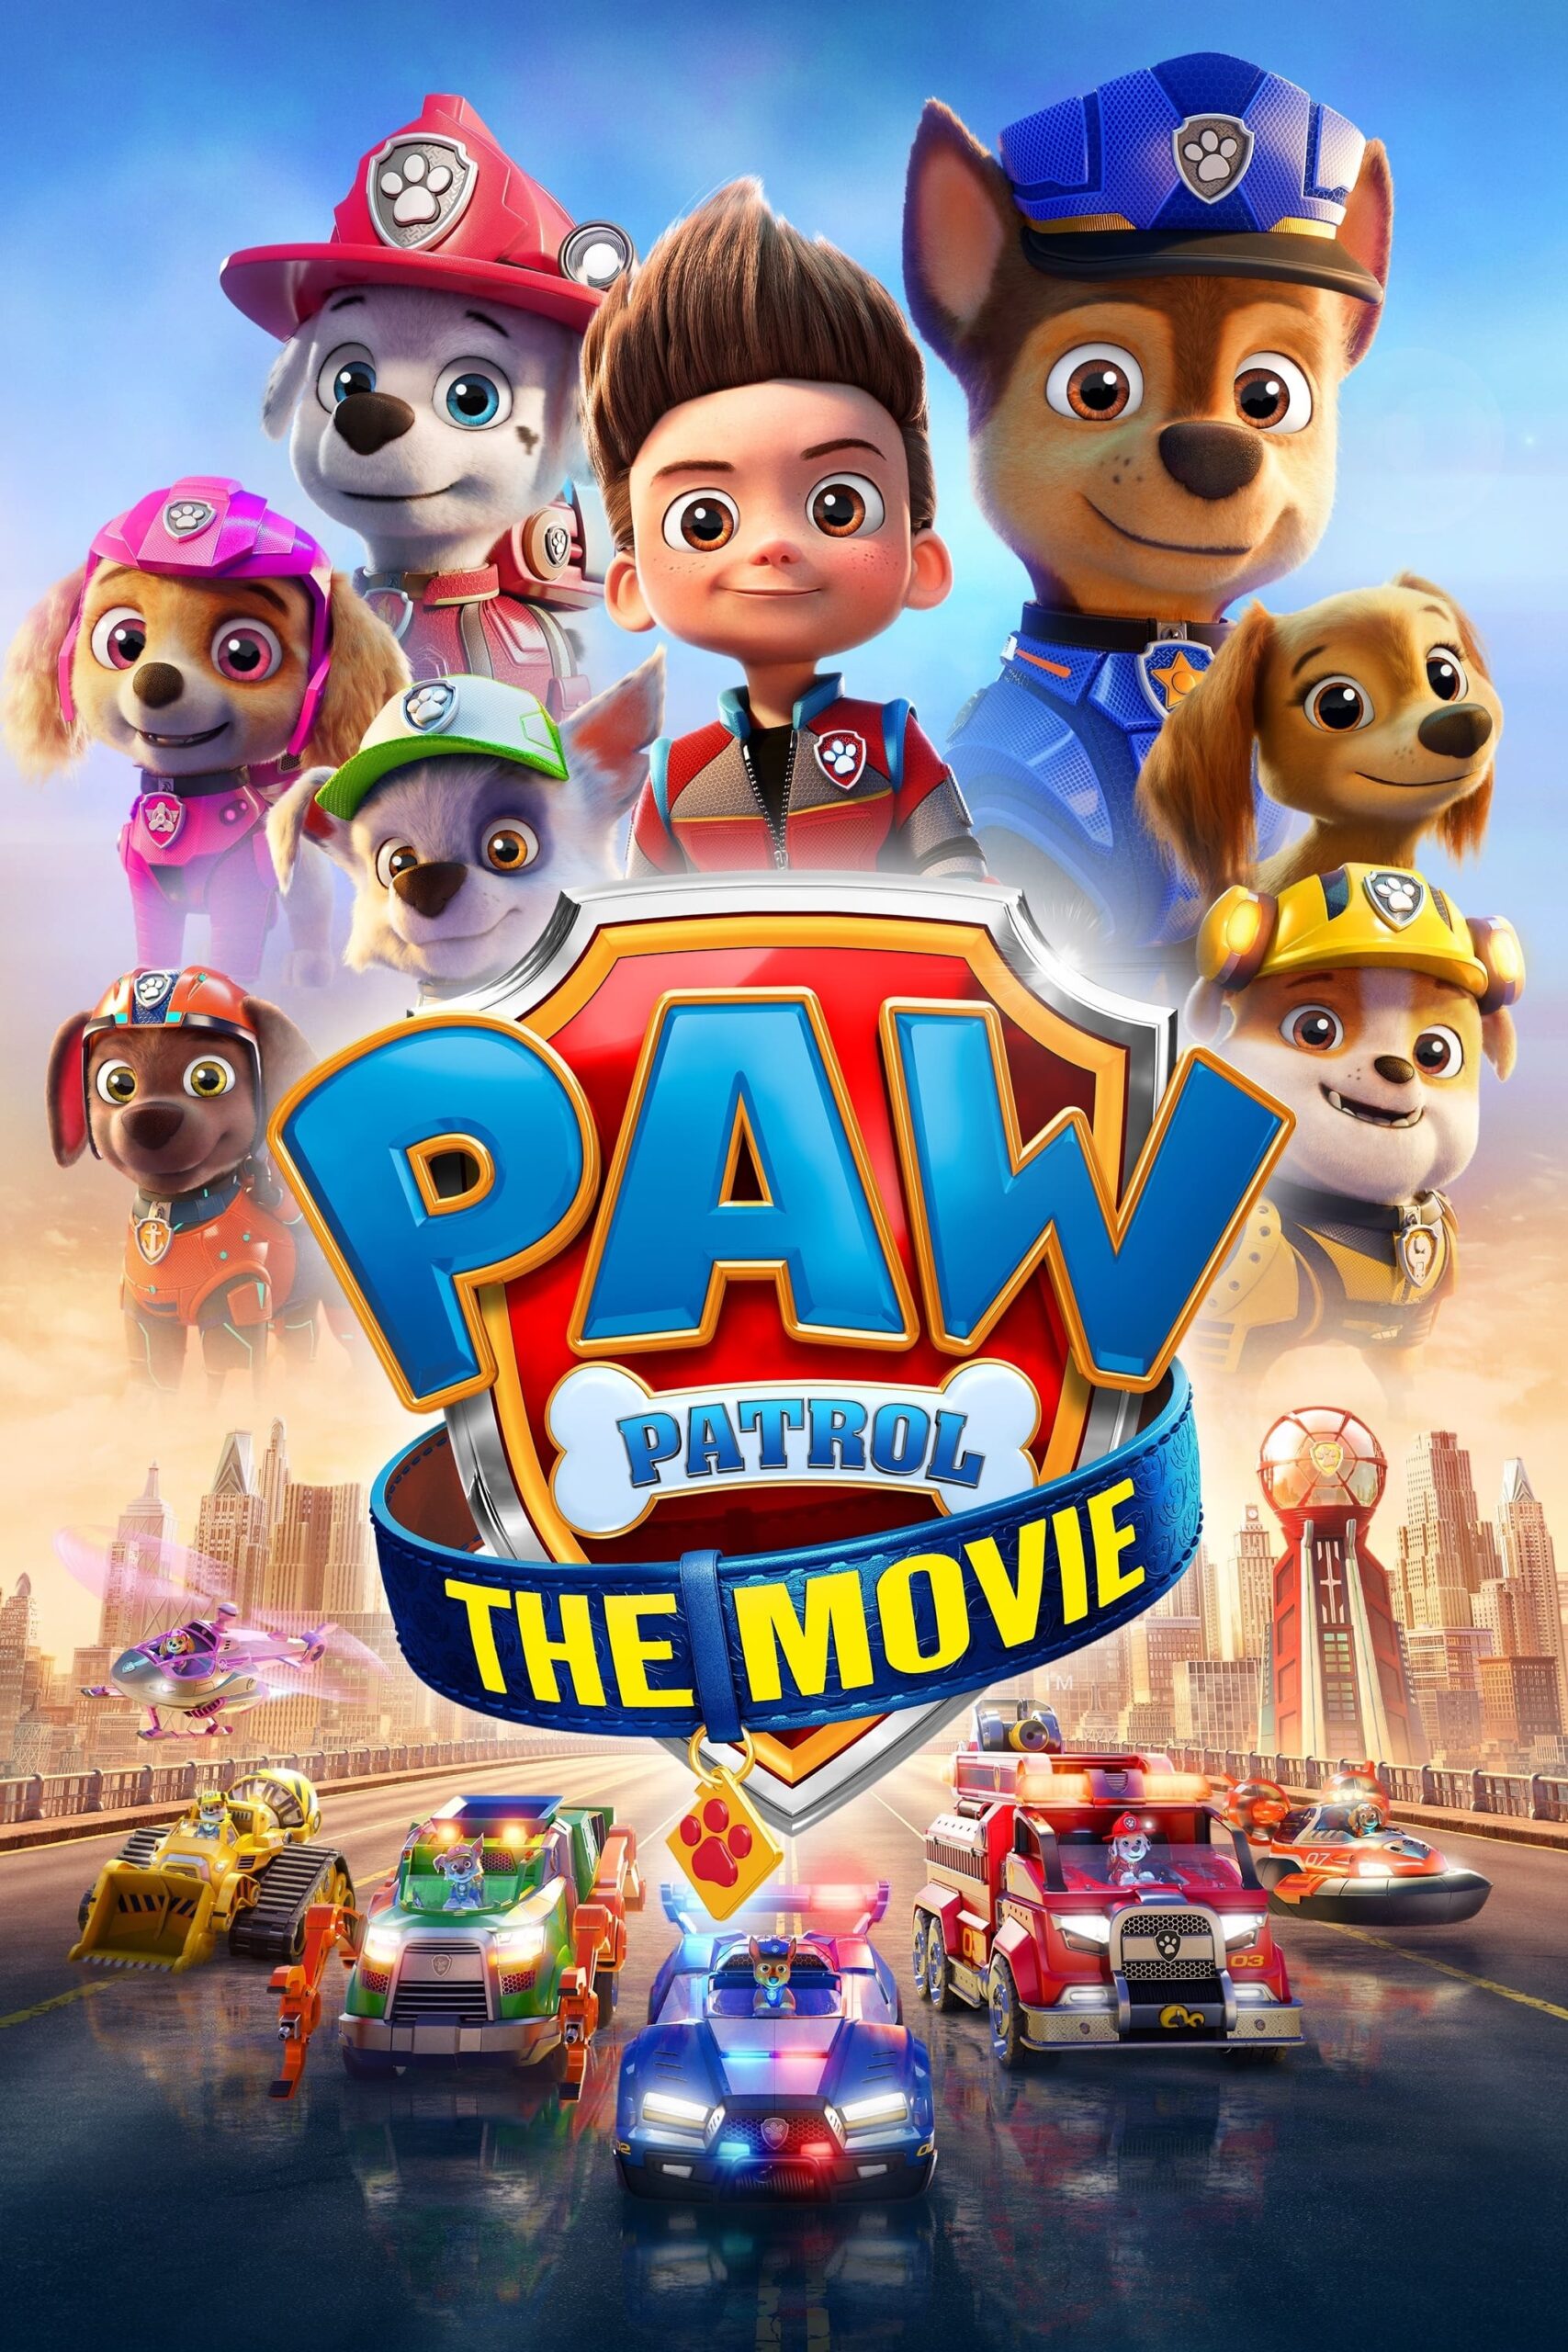 Paw Patrol the movie